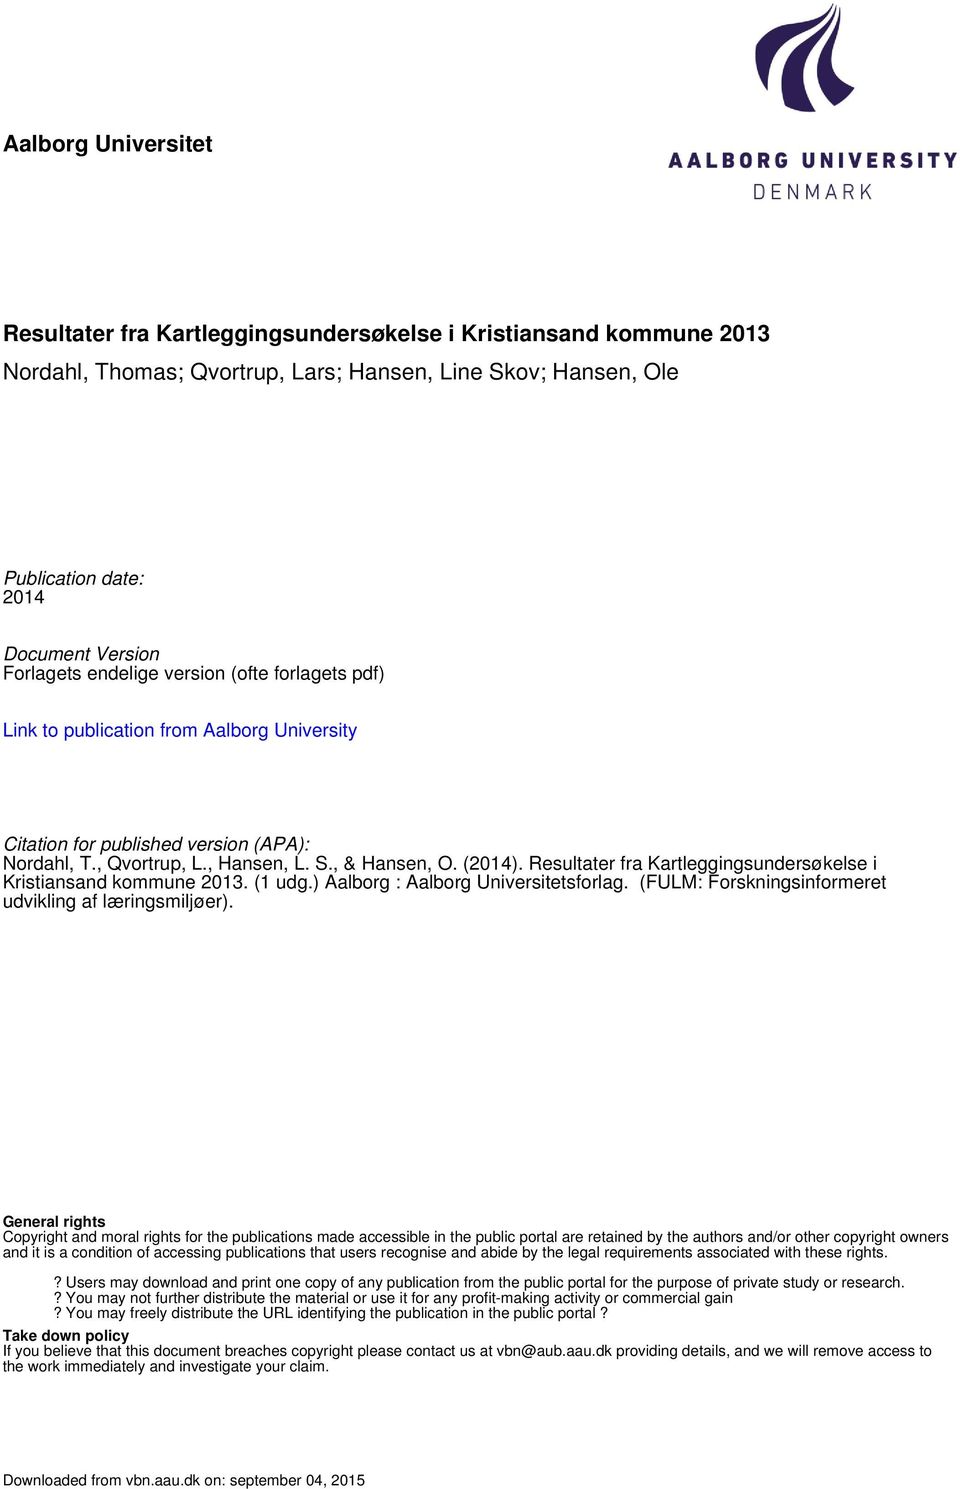 Resultater fra i Kristiansand kommune 2013. (1 udg.) Aalborg : Aalborg Universitetsforlag. (FULM: Forskningsinformeret udvikling af læringsmiljøer).